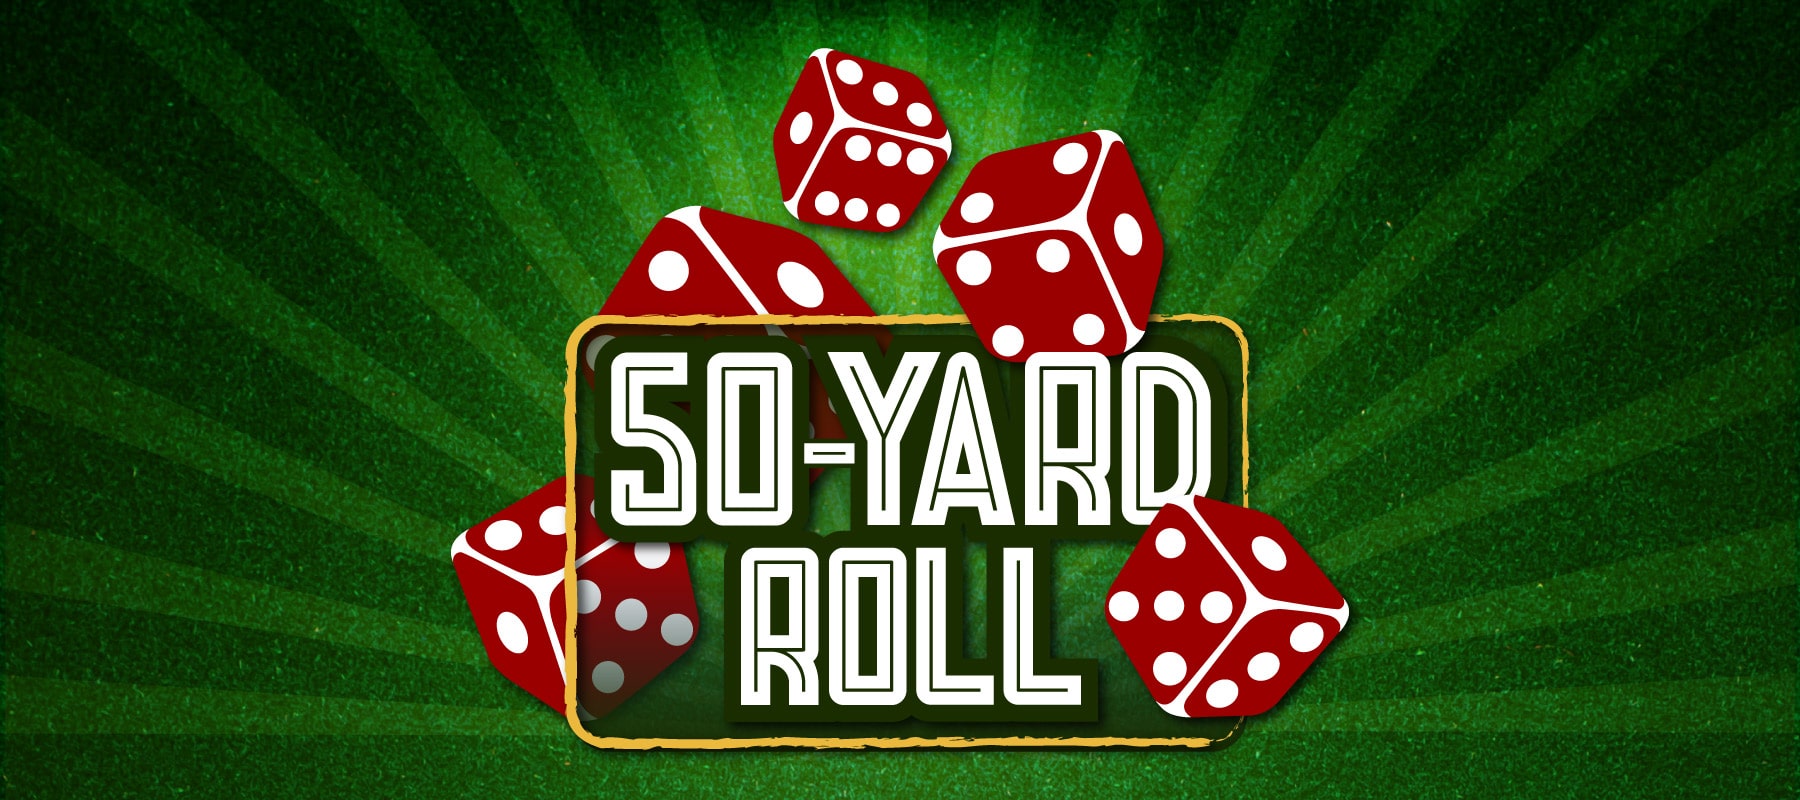 50 Yard Roll